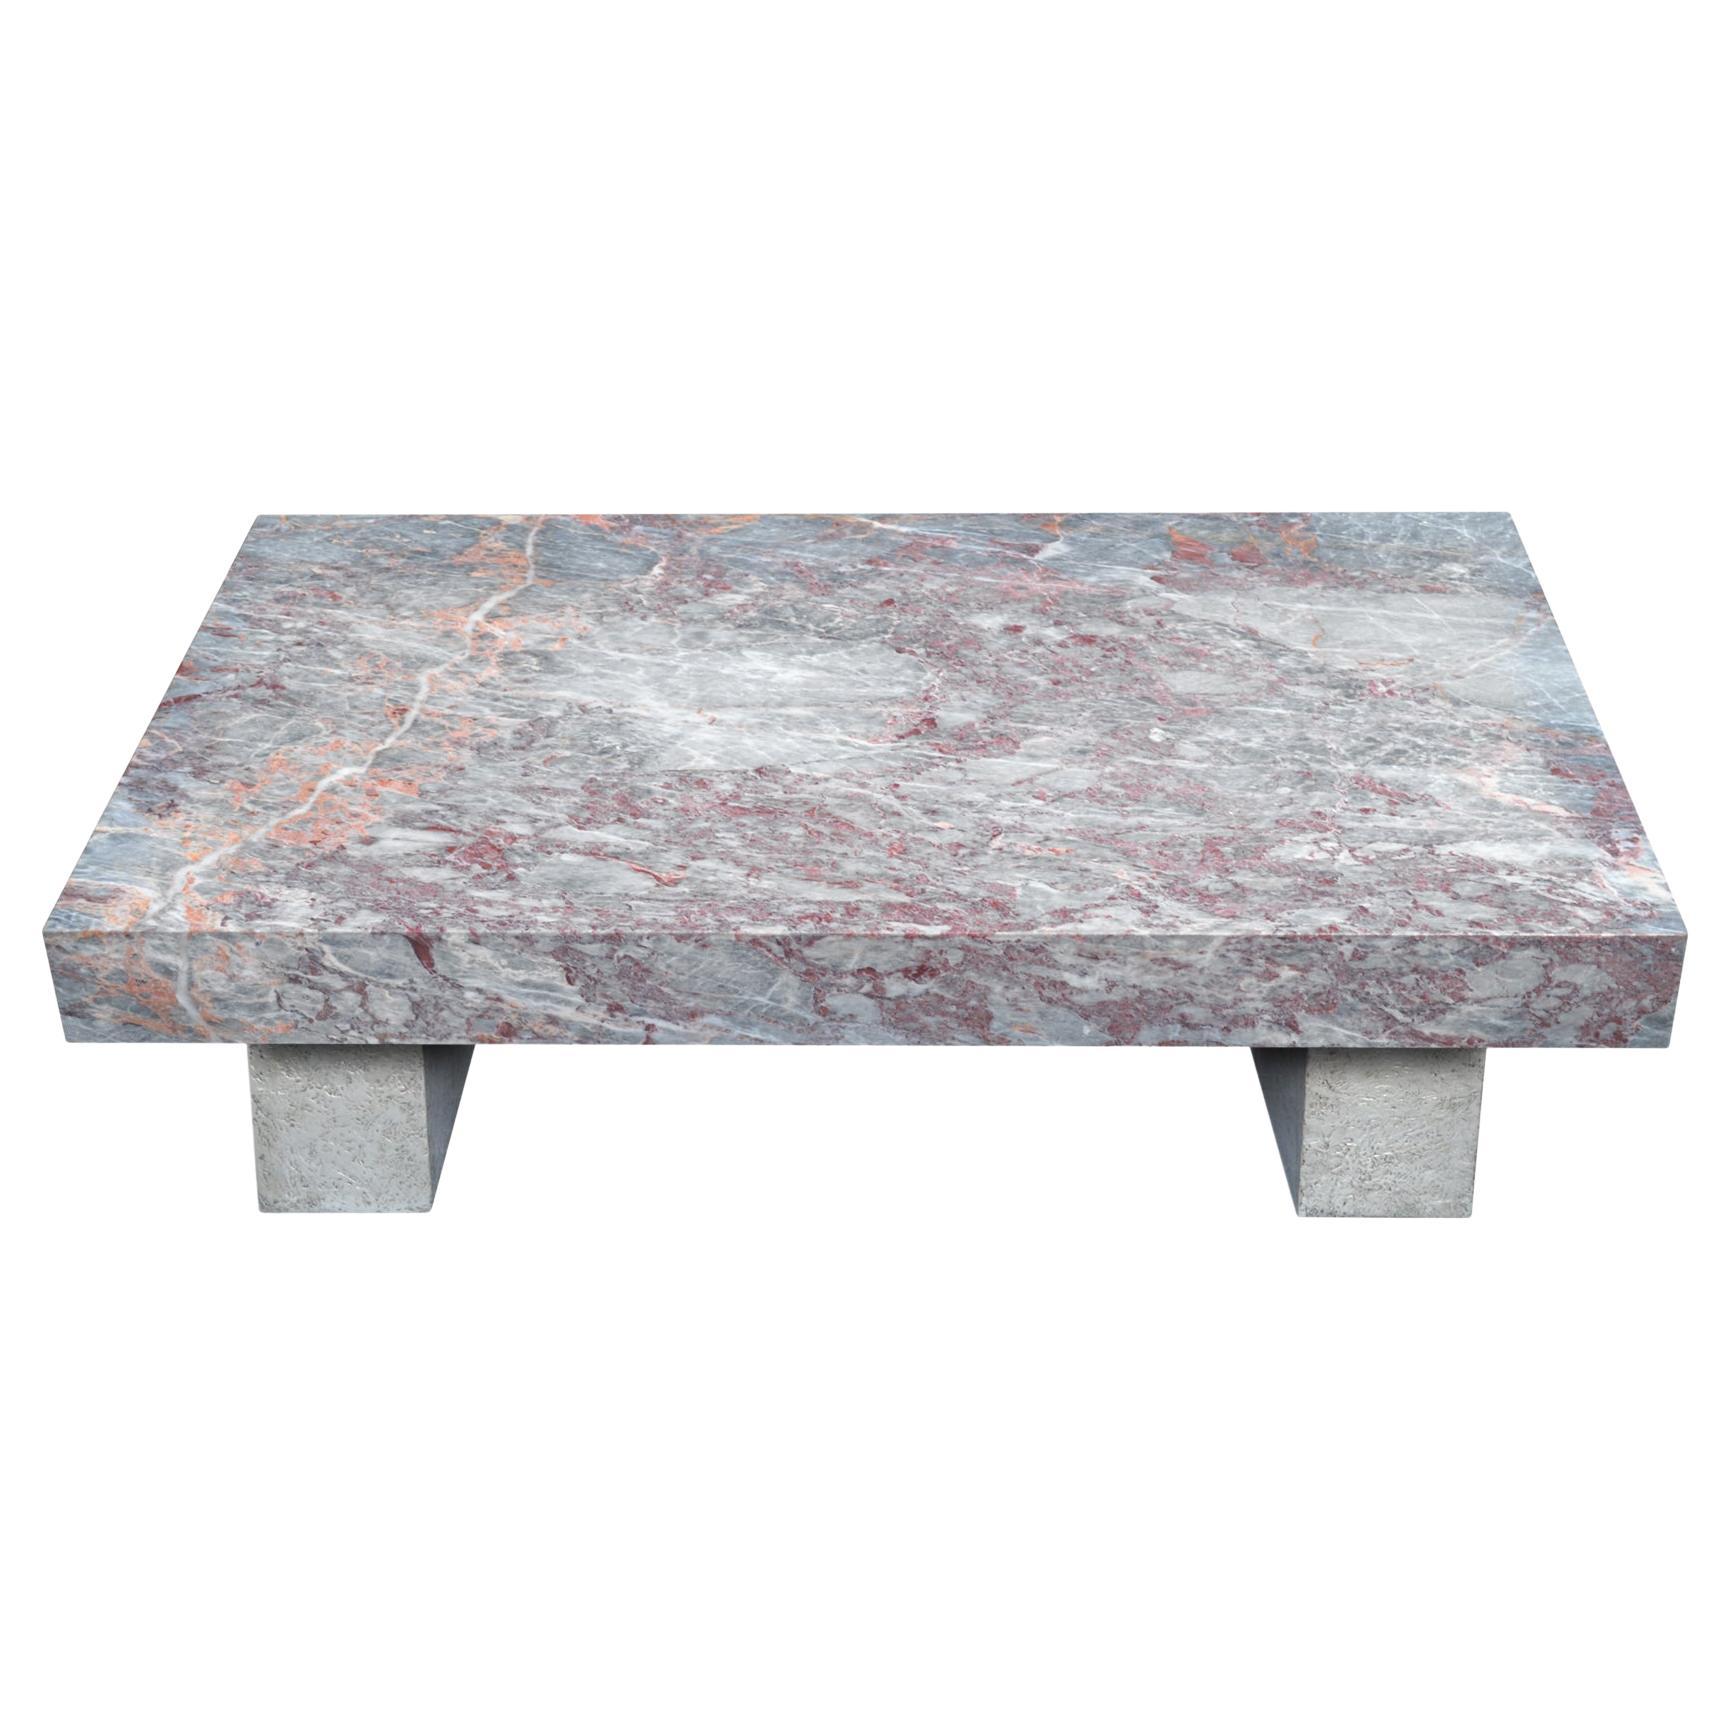 Table basse avec plateau en marbre et pieds texturés fabriqués à la main en Italie par Cupioli, disponible